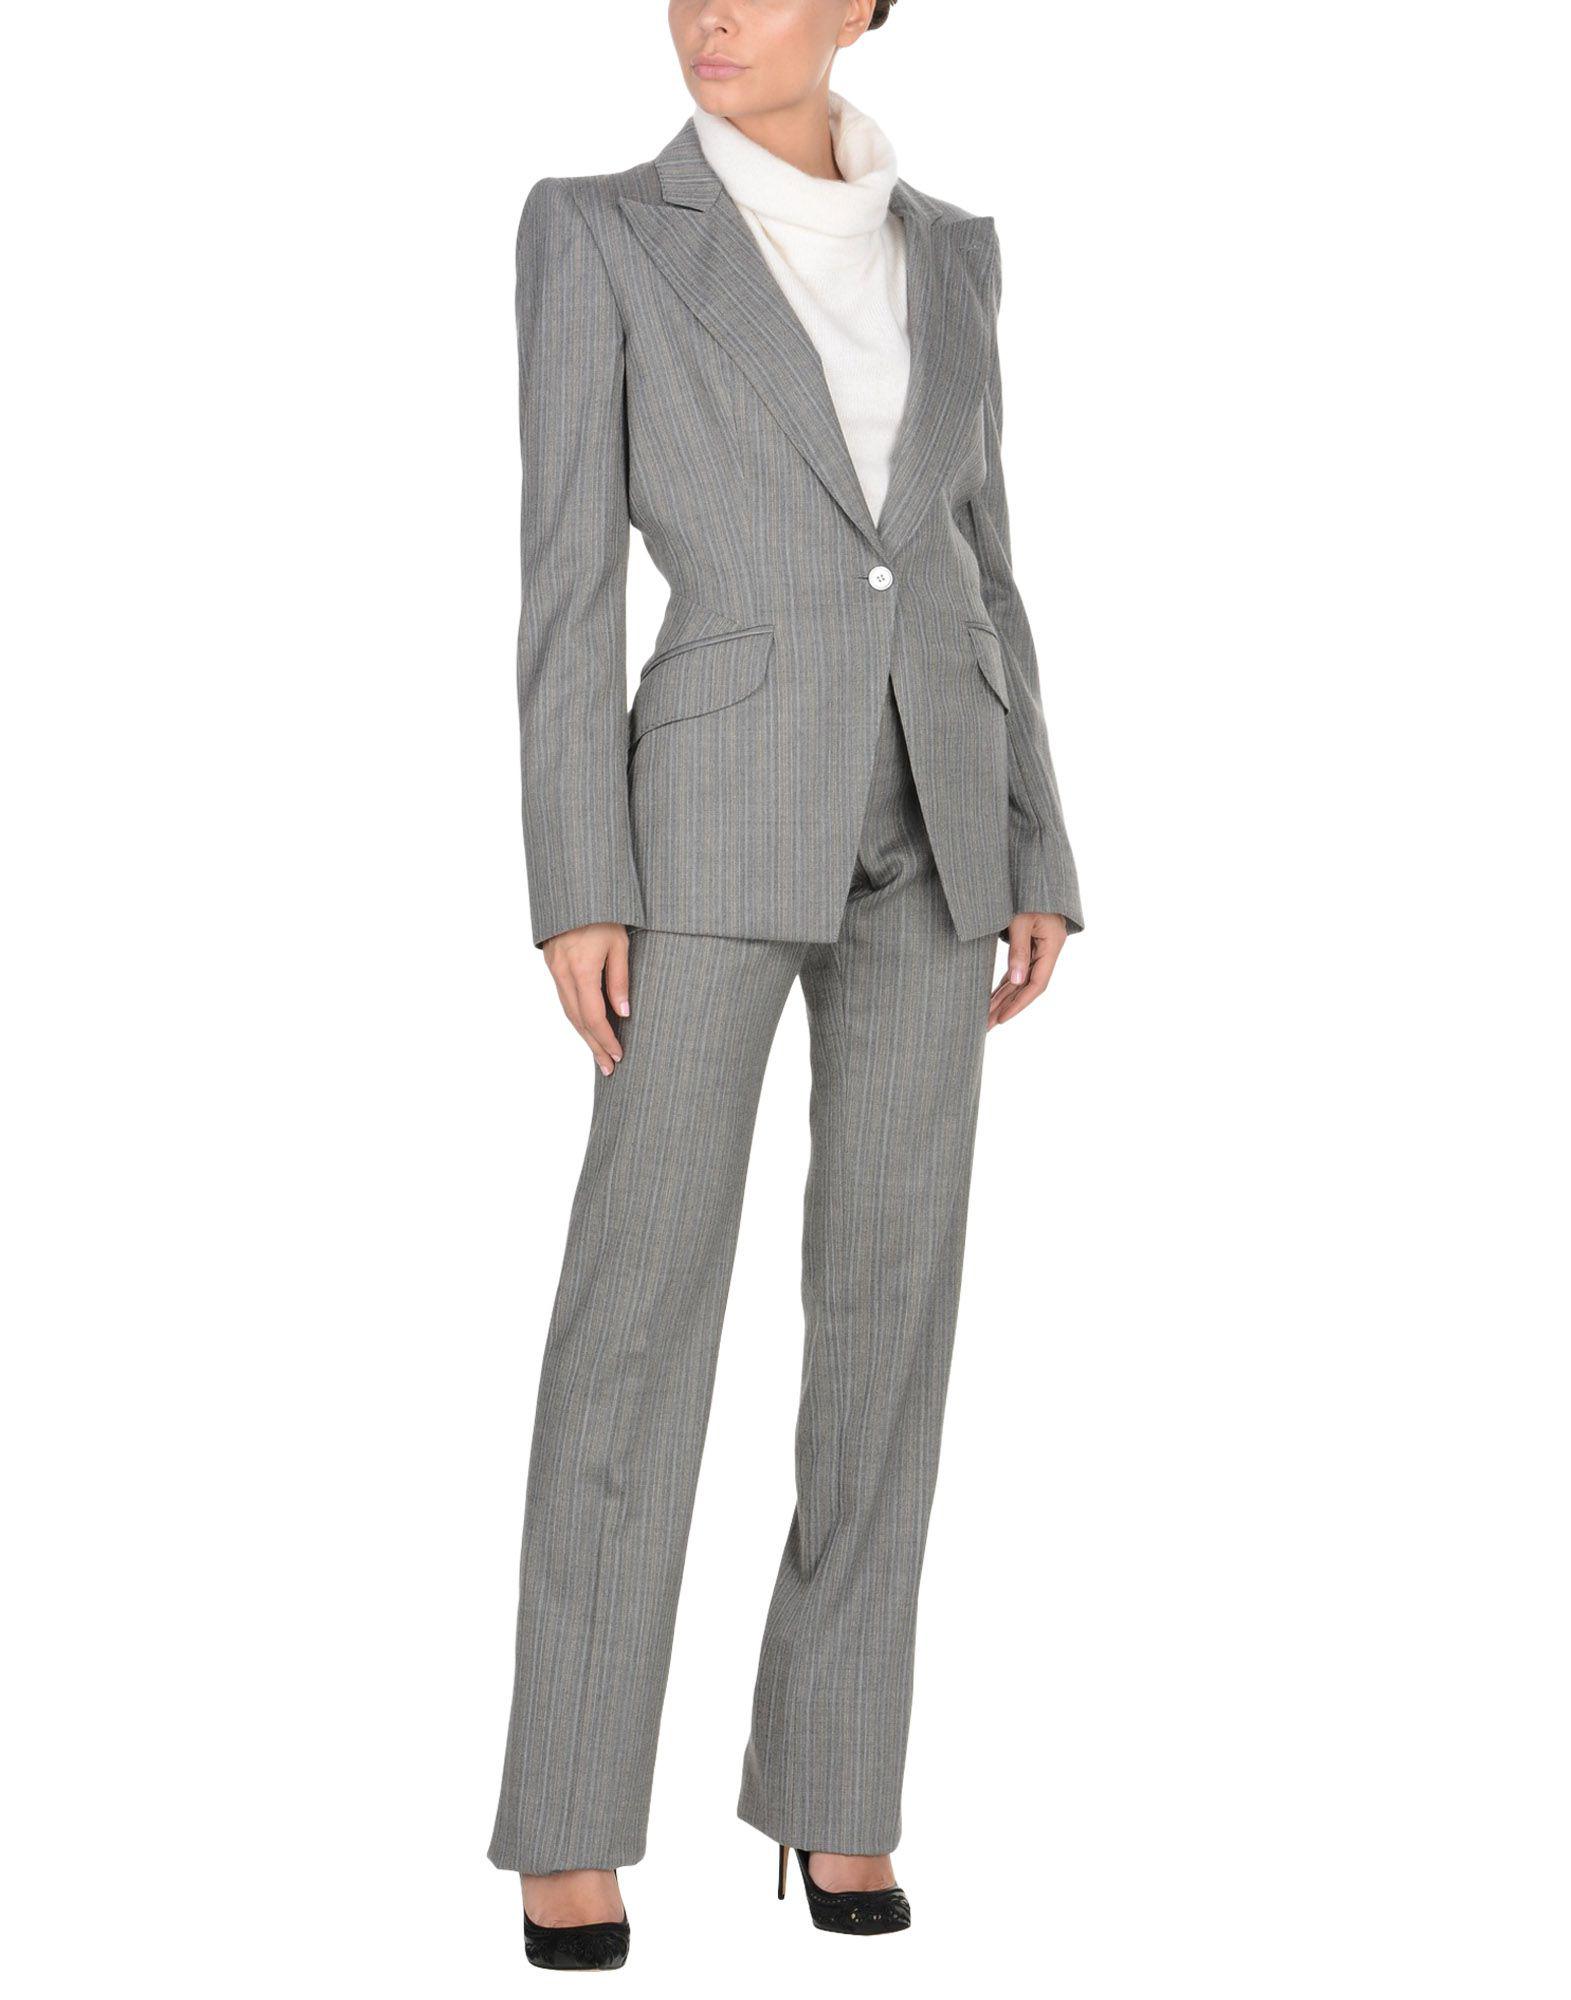 Alexander McQueen Flannel Women's Suit in Grey (Gray) - Lyst